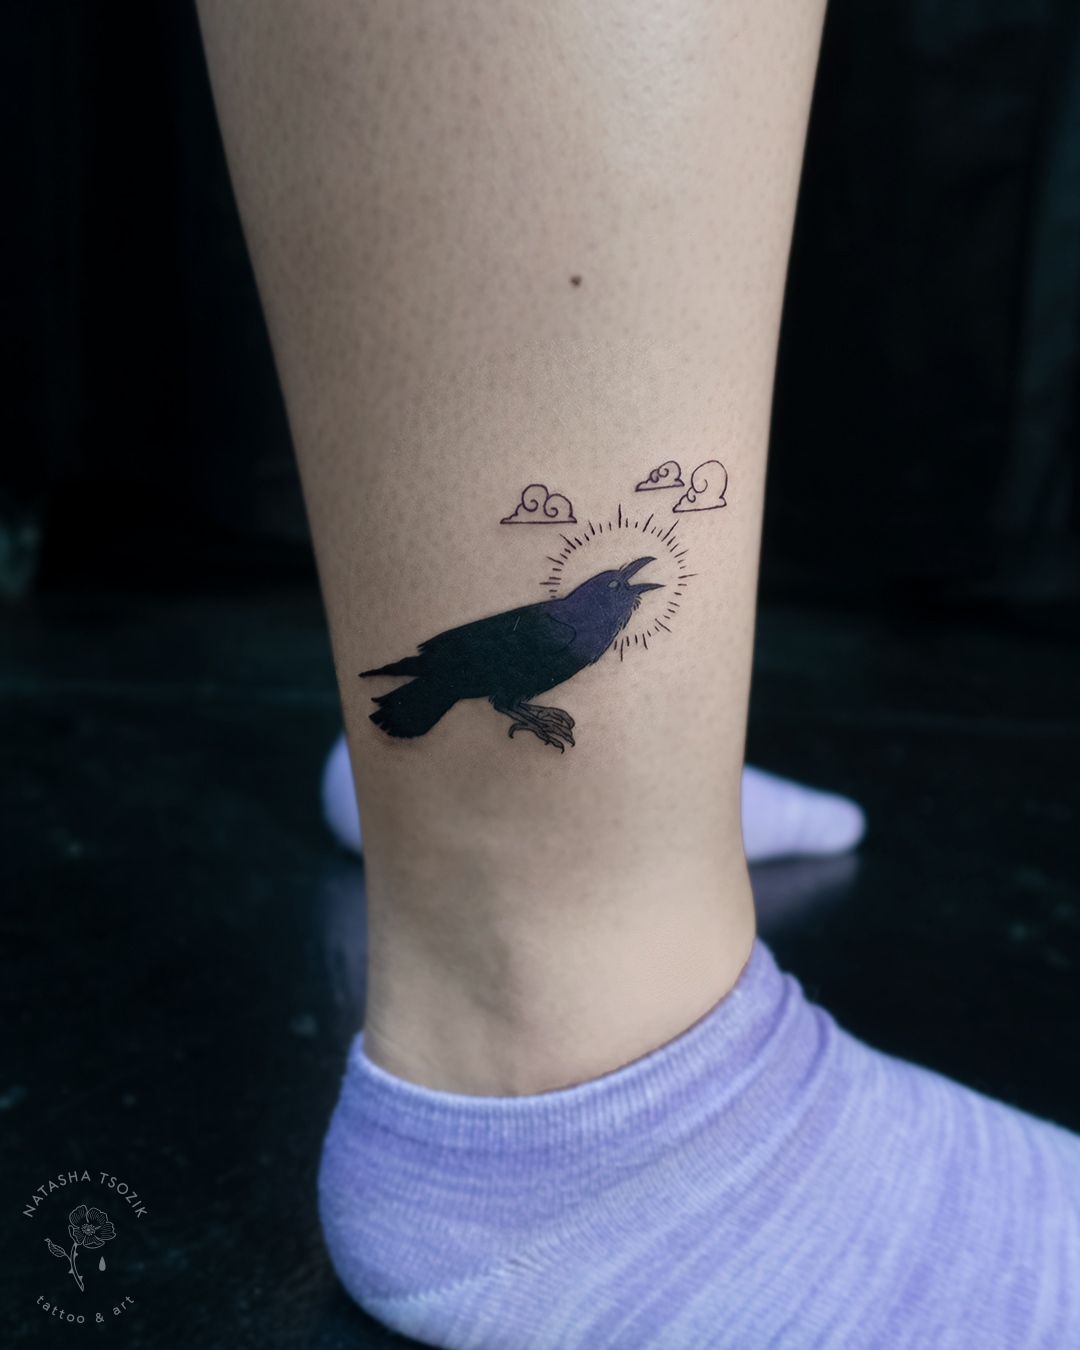 Yokai raven tattoo on an ankle.